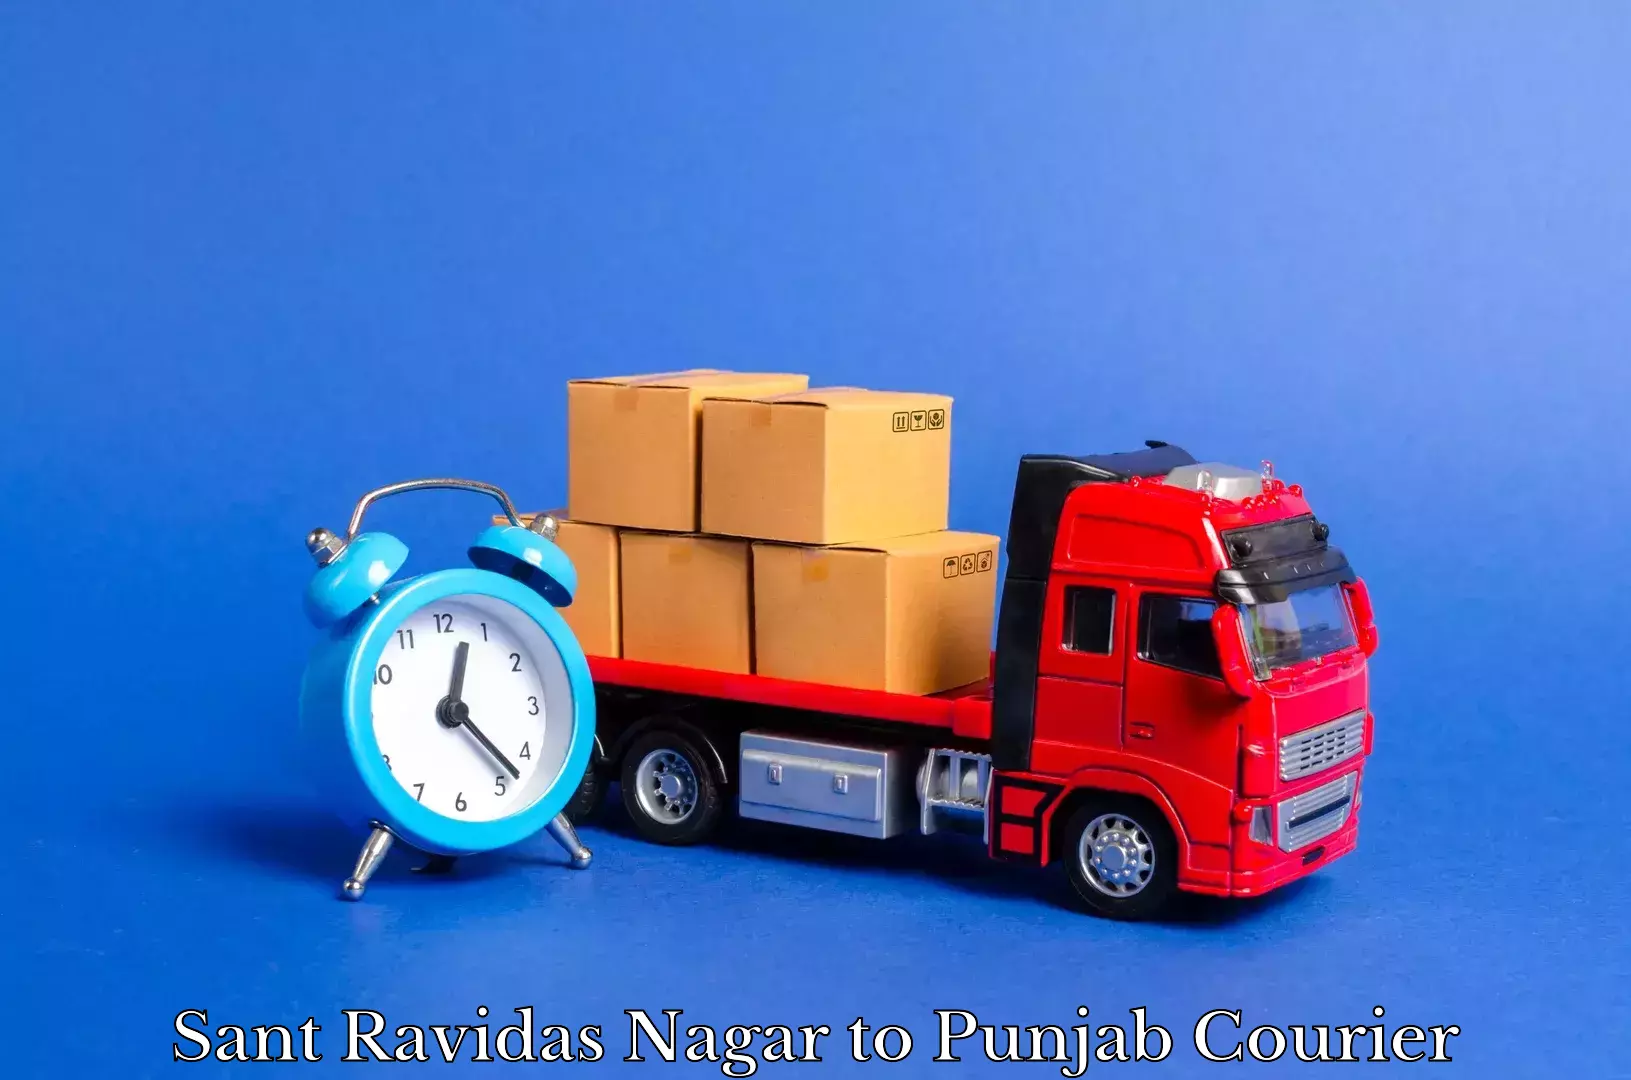 Furniture transport experts Sant Ravidas Nagar to Machhiwara